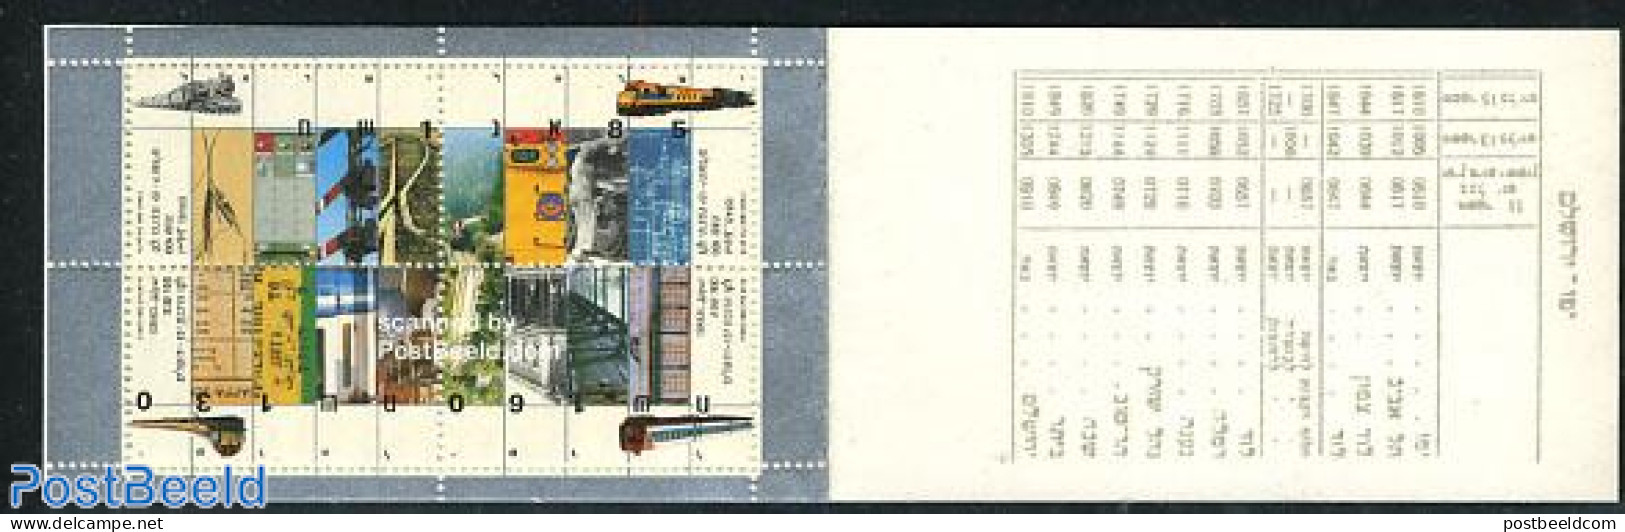 Israel 1992 Jaffa-Jerusalem Railway Booklet, Mint NH, Transport - Stamp Booklets - Railways - Ongebruikt (met Tabs)